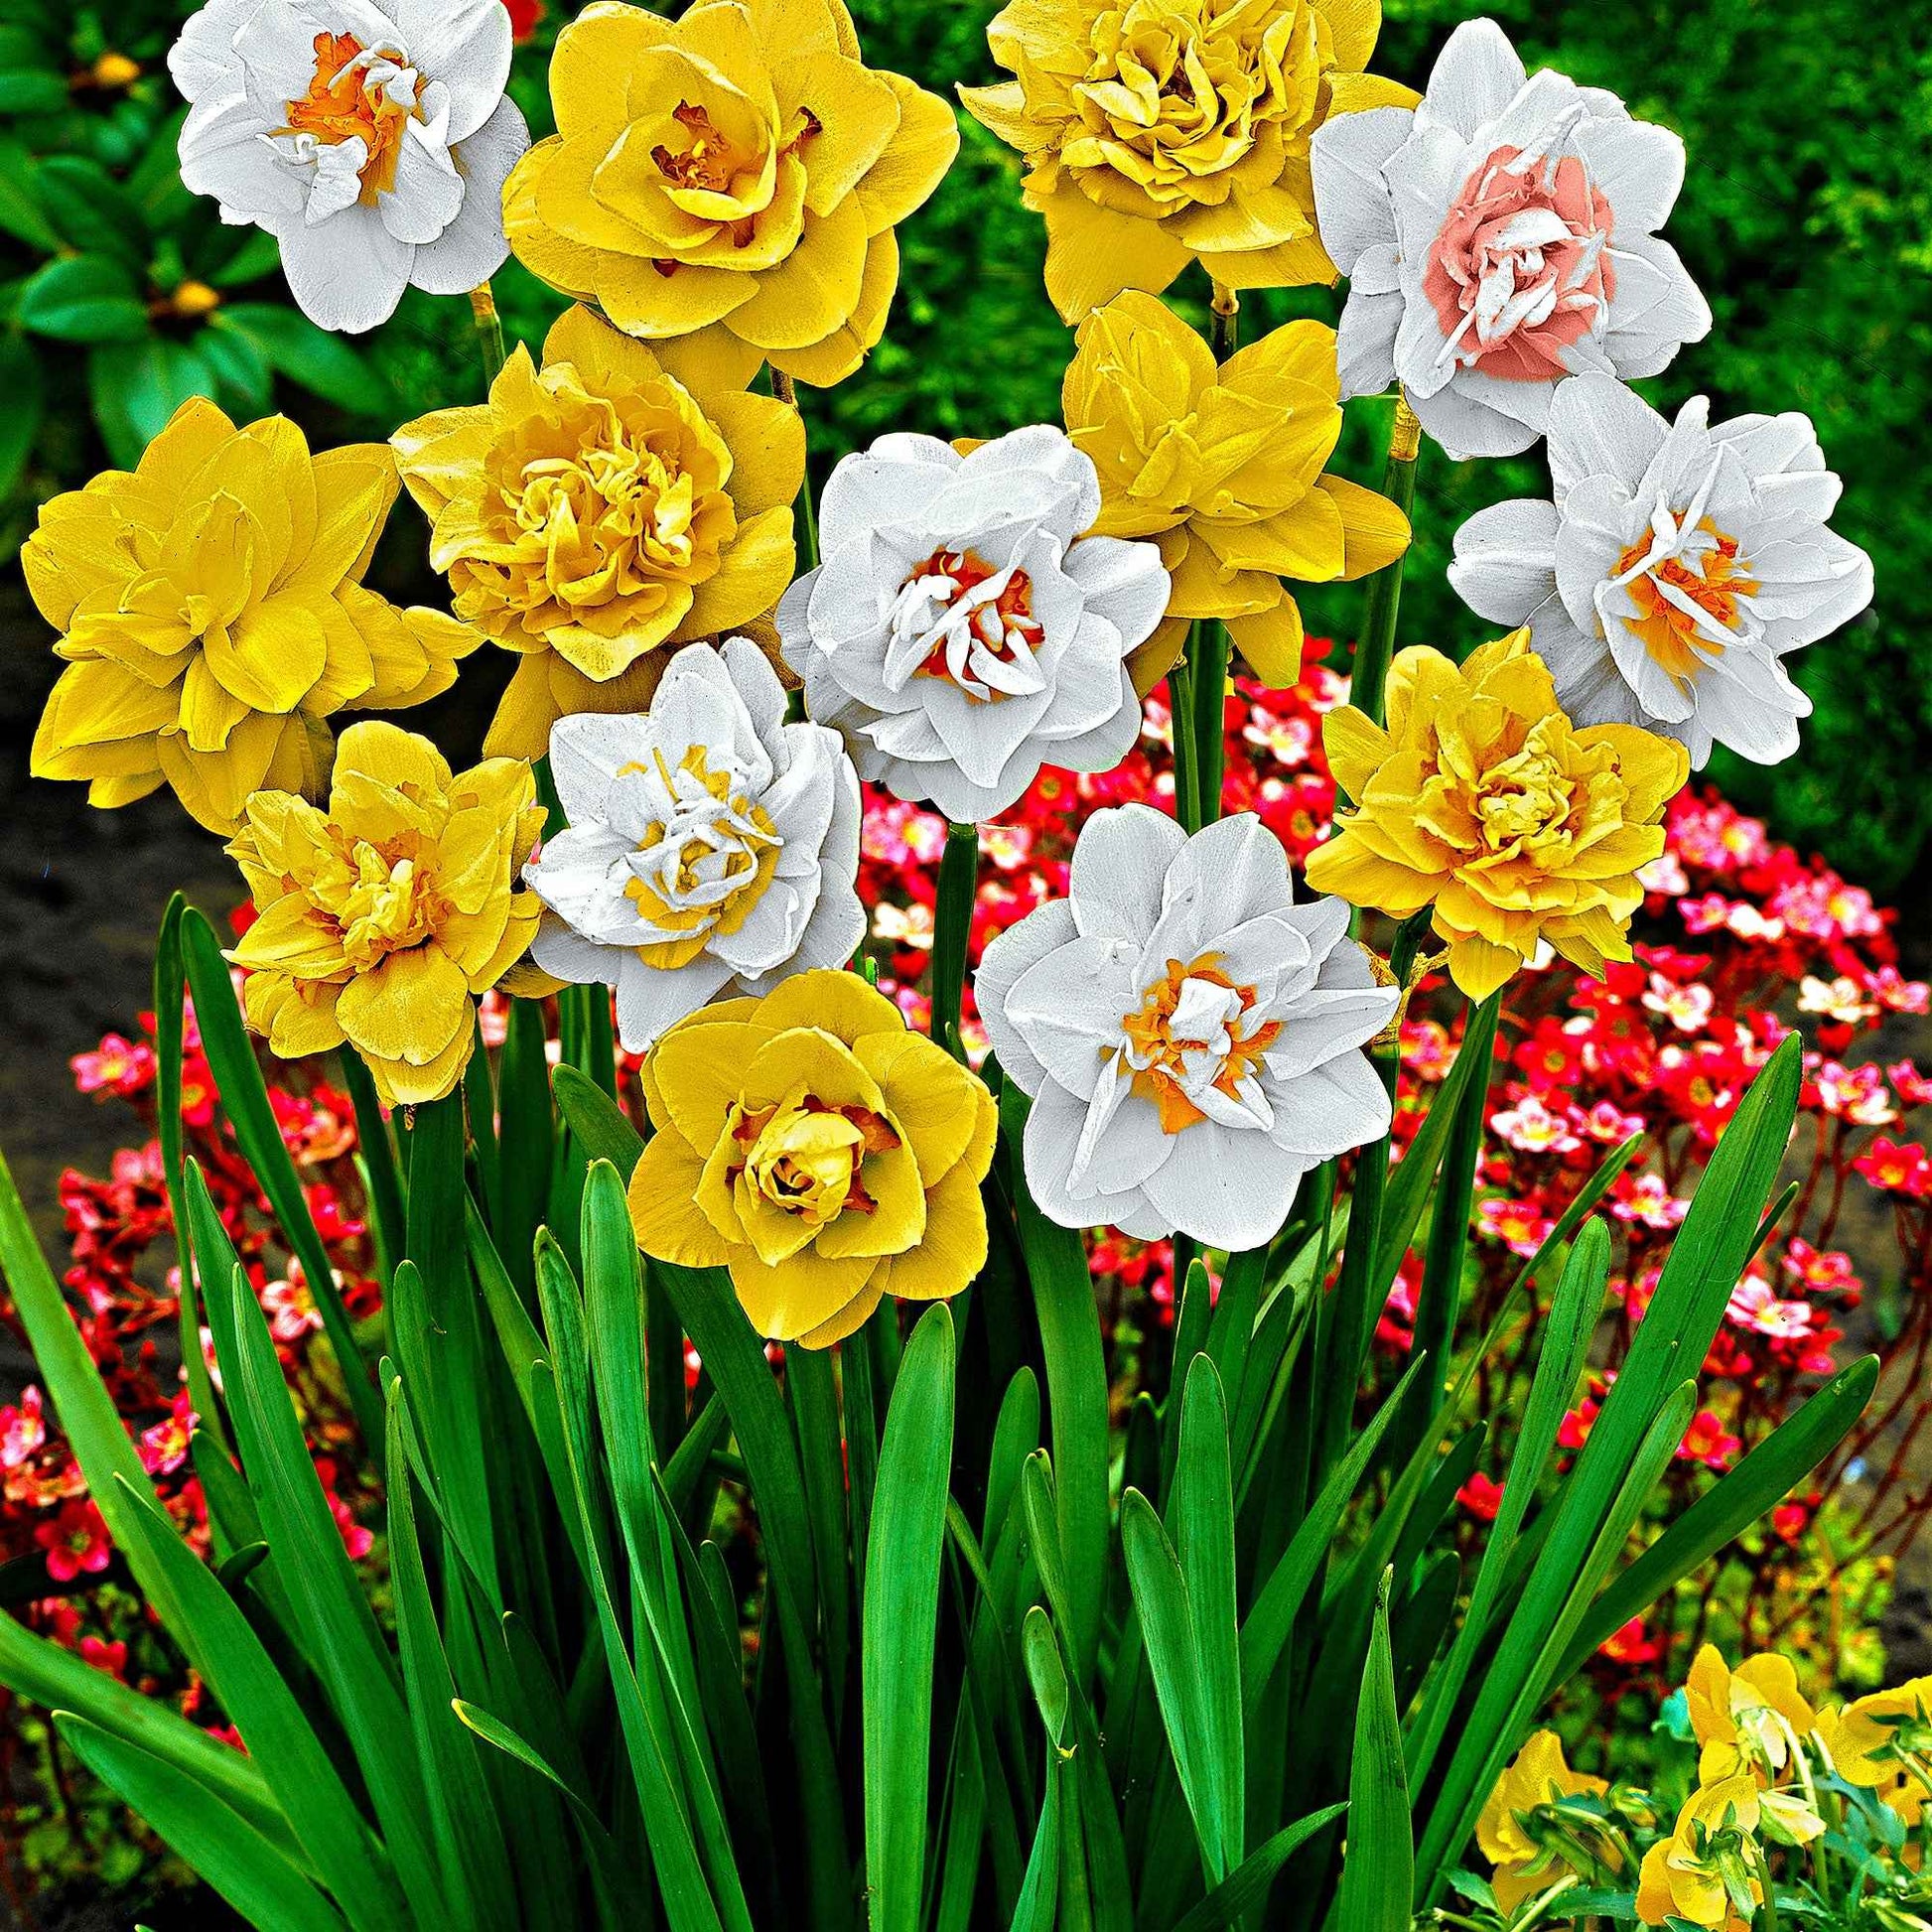 25x Narcisses à fleurs doubles Narcissus - Mélange 'Double Flowers' blanc-orangé-jaune - Bulbes de fleurs pour la terrasse et le balcon